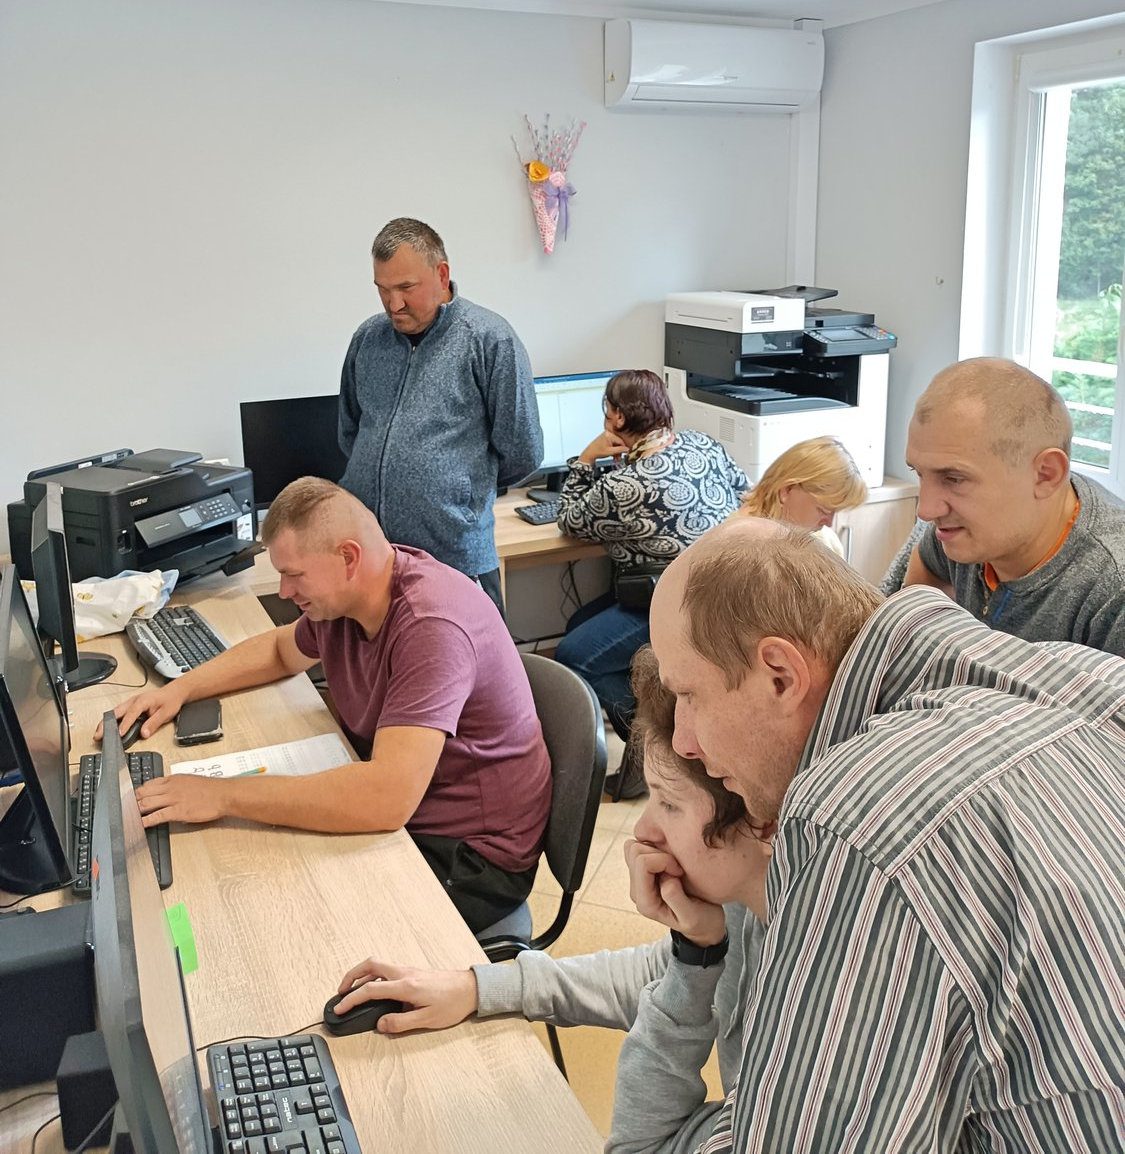 Uczestnicy zajęć pracują przy stanowiskach komputerowych. Część osób pracuje w grupach a część pojedyńczo. W tle widoczne dwa urządzenia wielofunkcyjne.